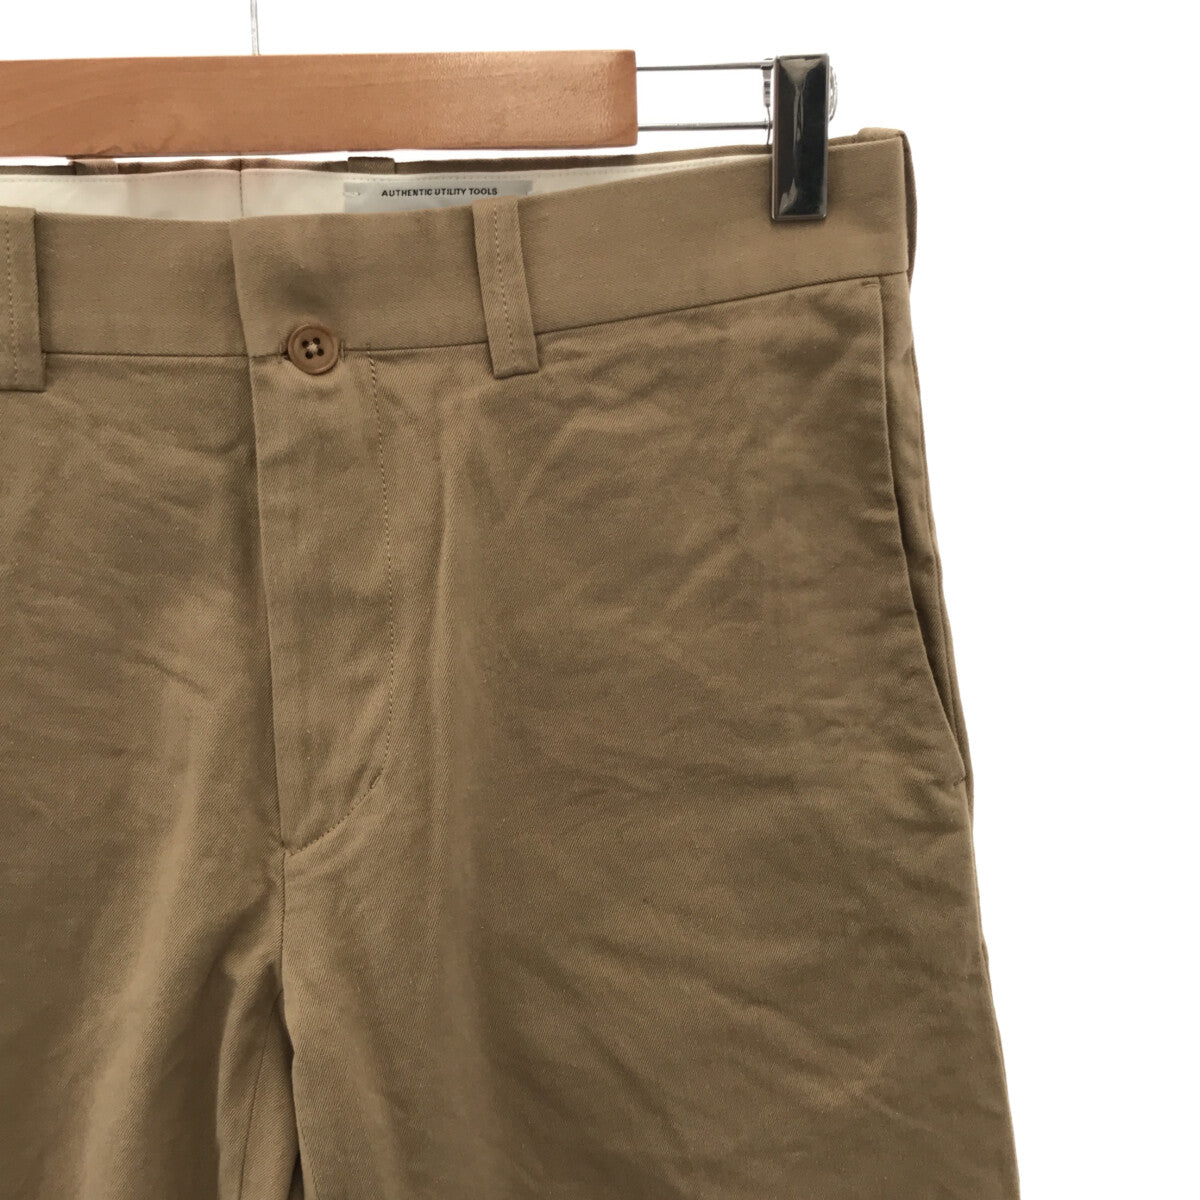 YAECA / ヤエカ | Chino Cloth Pants EXCLUSIVE FABRIC / チノクロスパンツ | 32 |